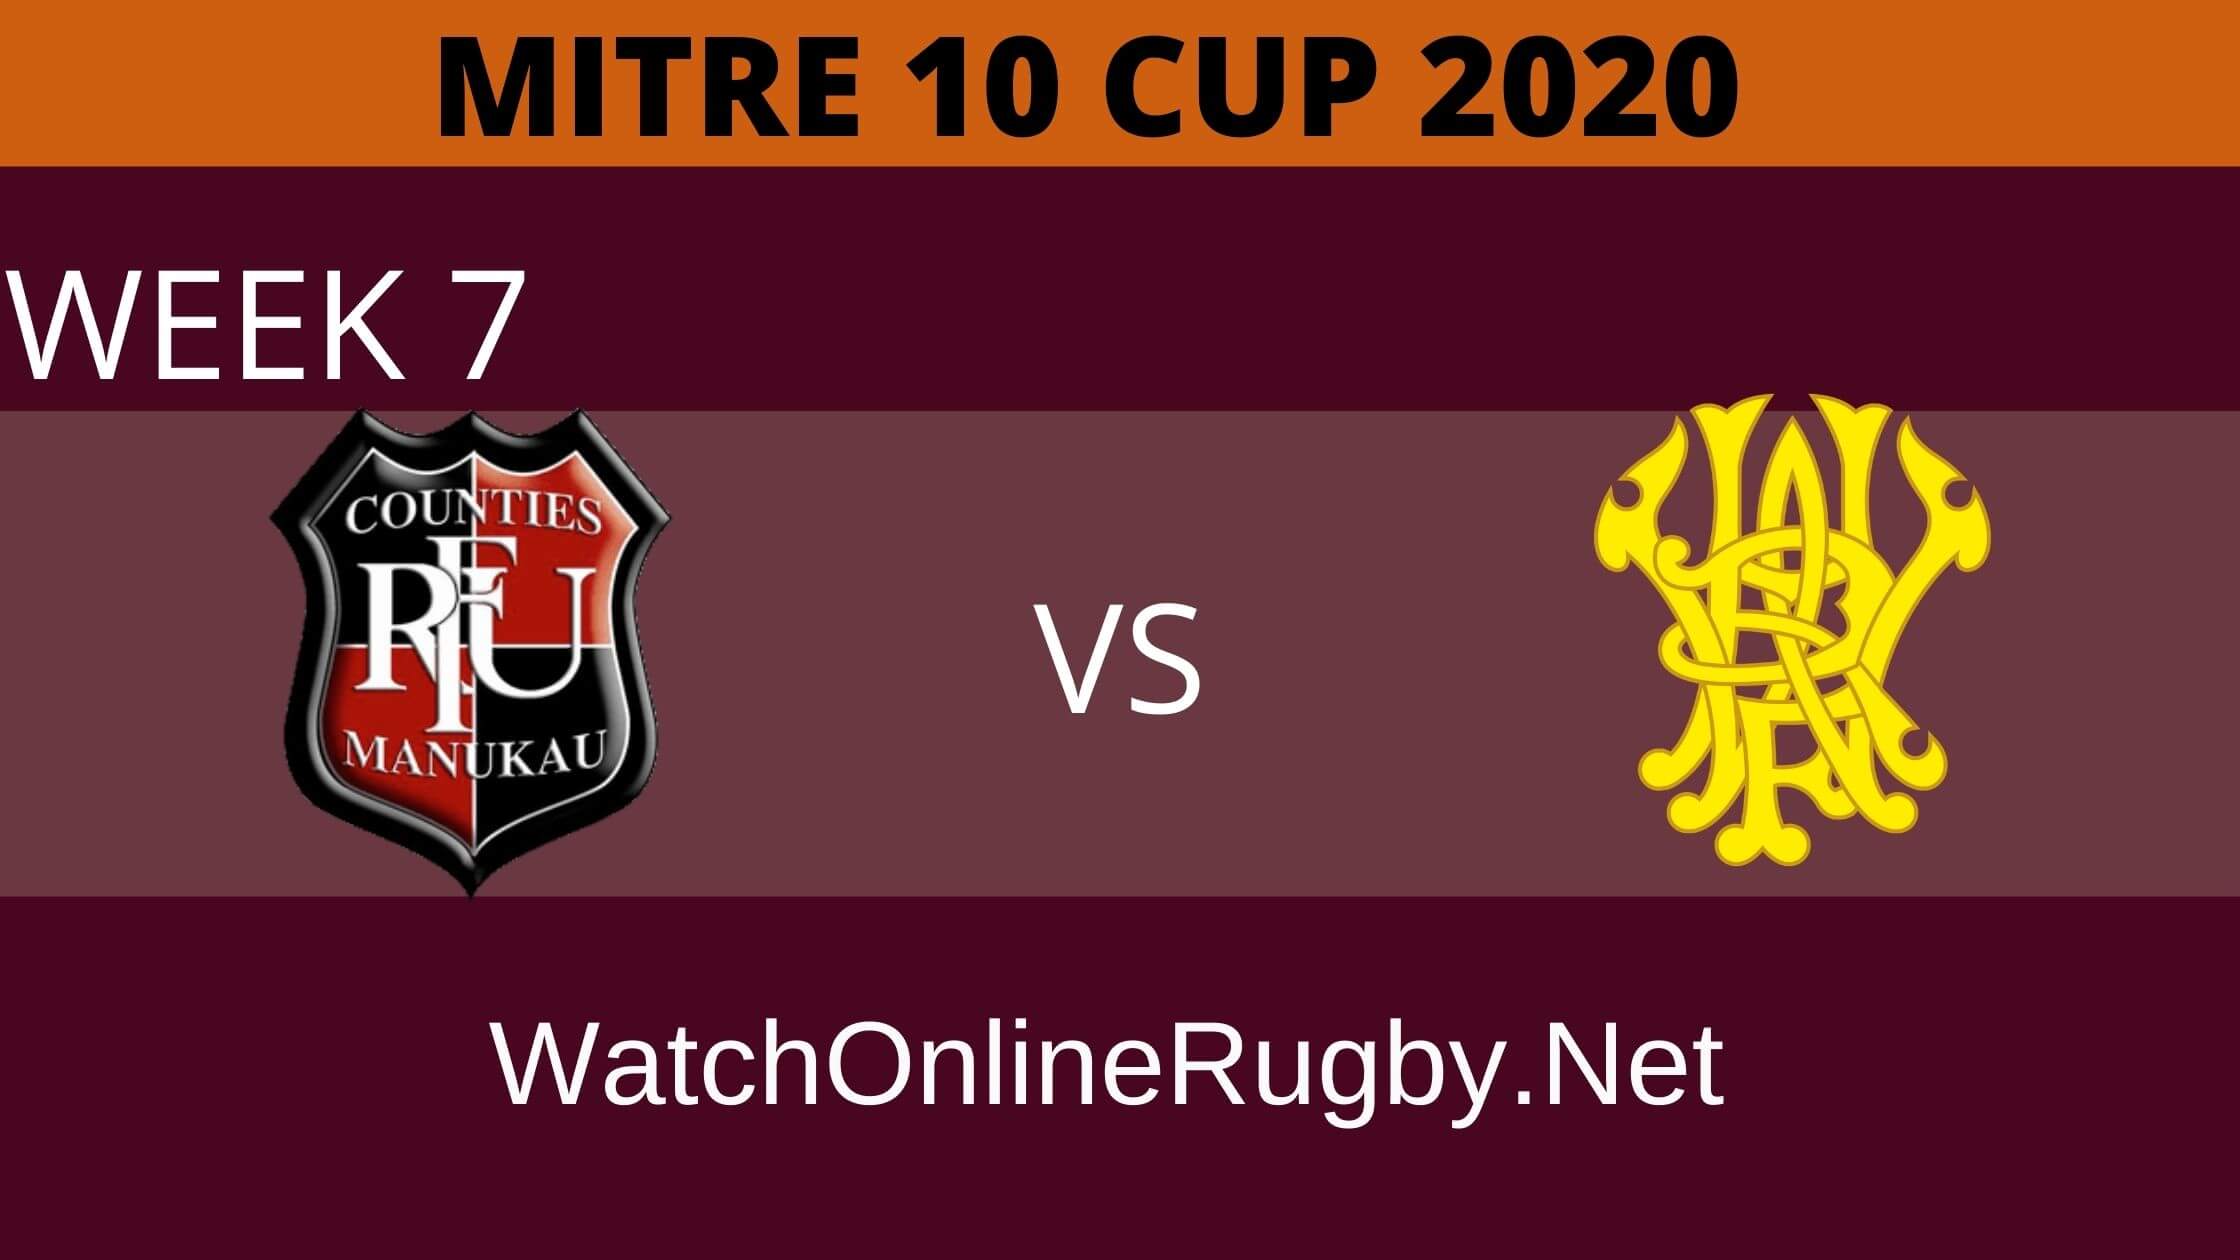 Counties Manukau vs Wellington Mitre 10 Cup 2020 Week 7